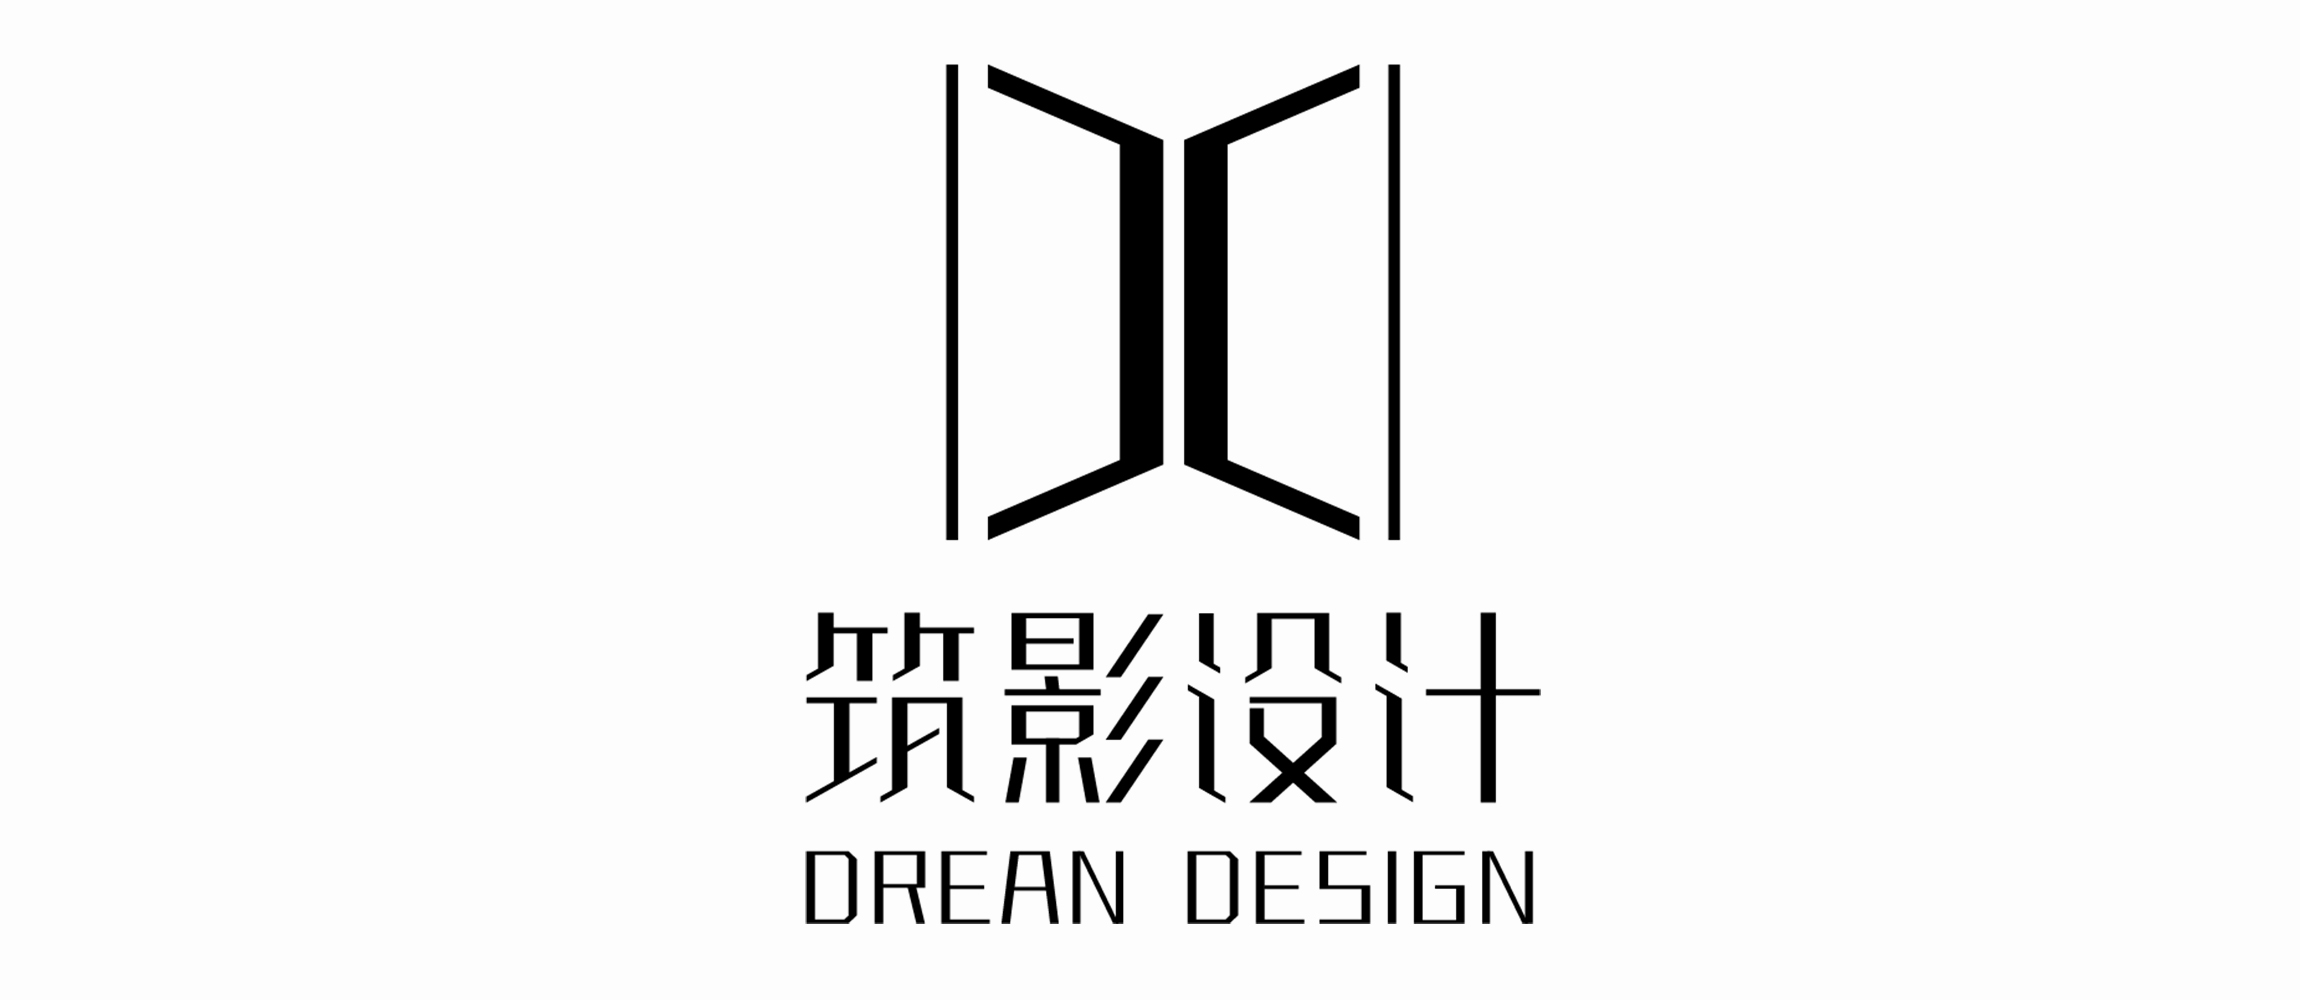 广州市筑影建设工程设计有限公司